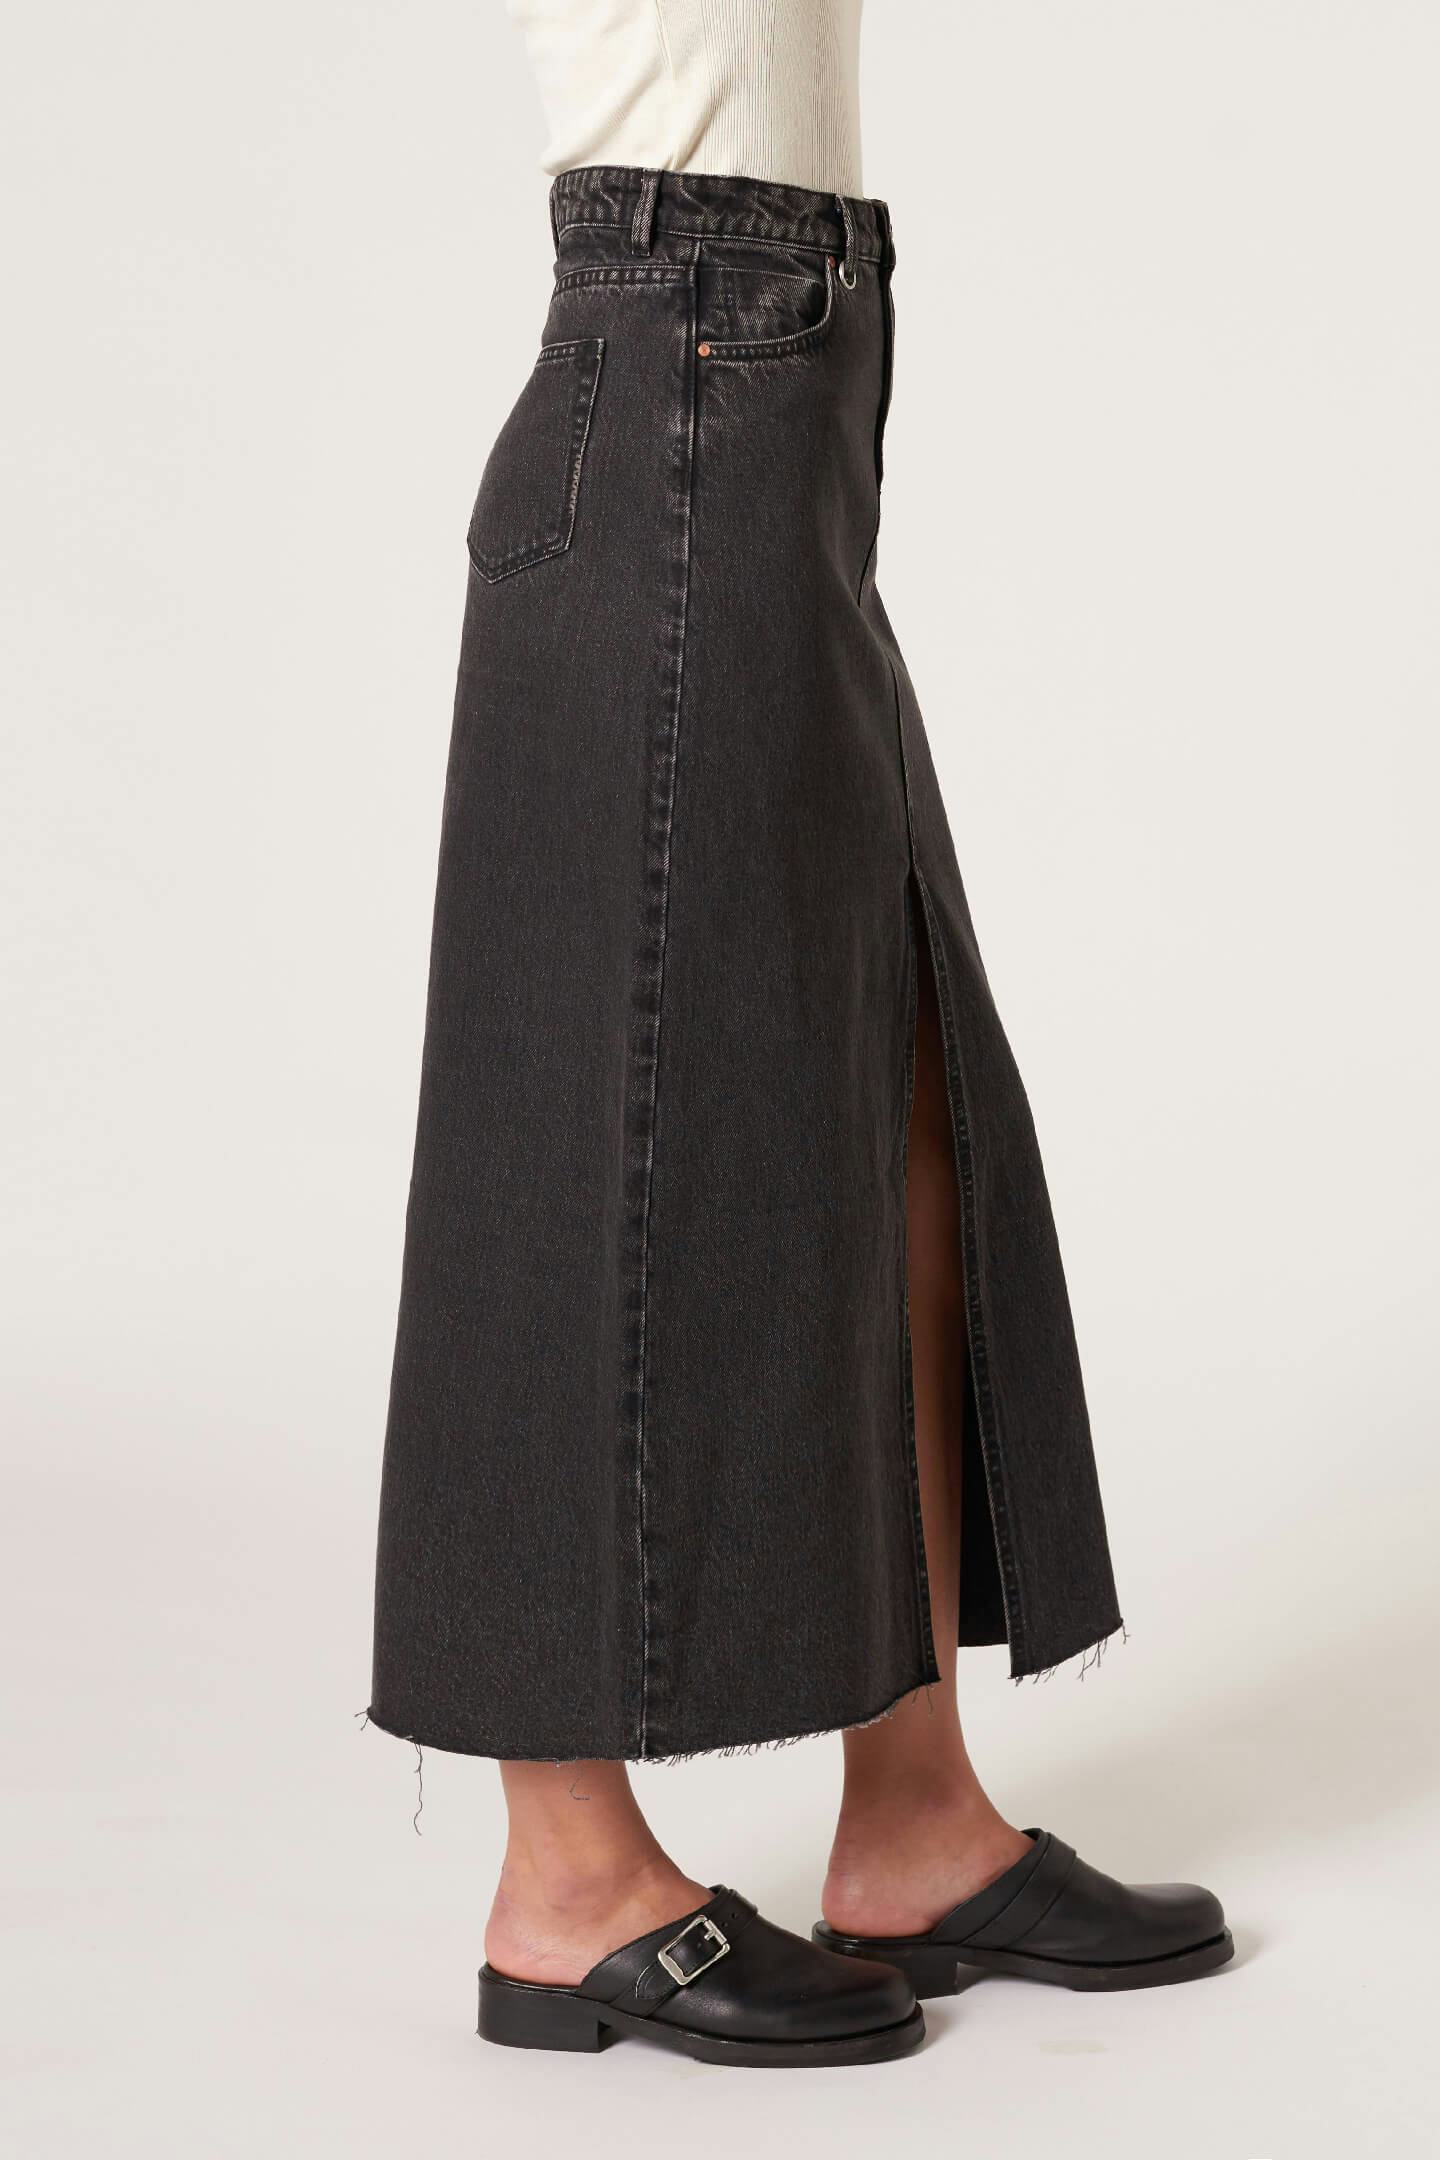 Darcy Maxi Skirt - Granite Neuw maxi black womens-skirts 